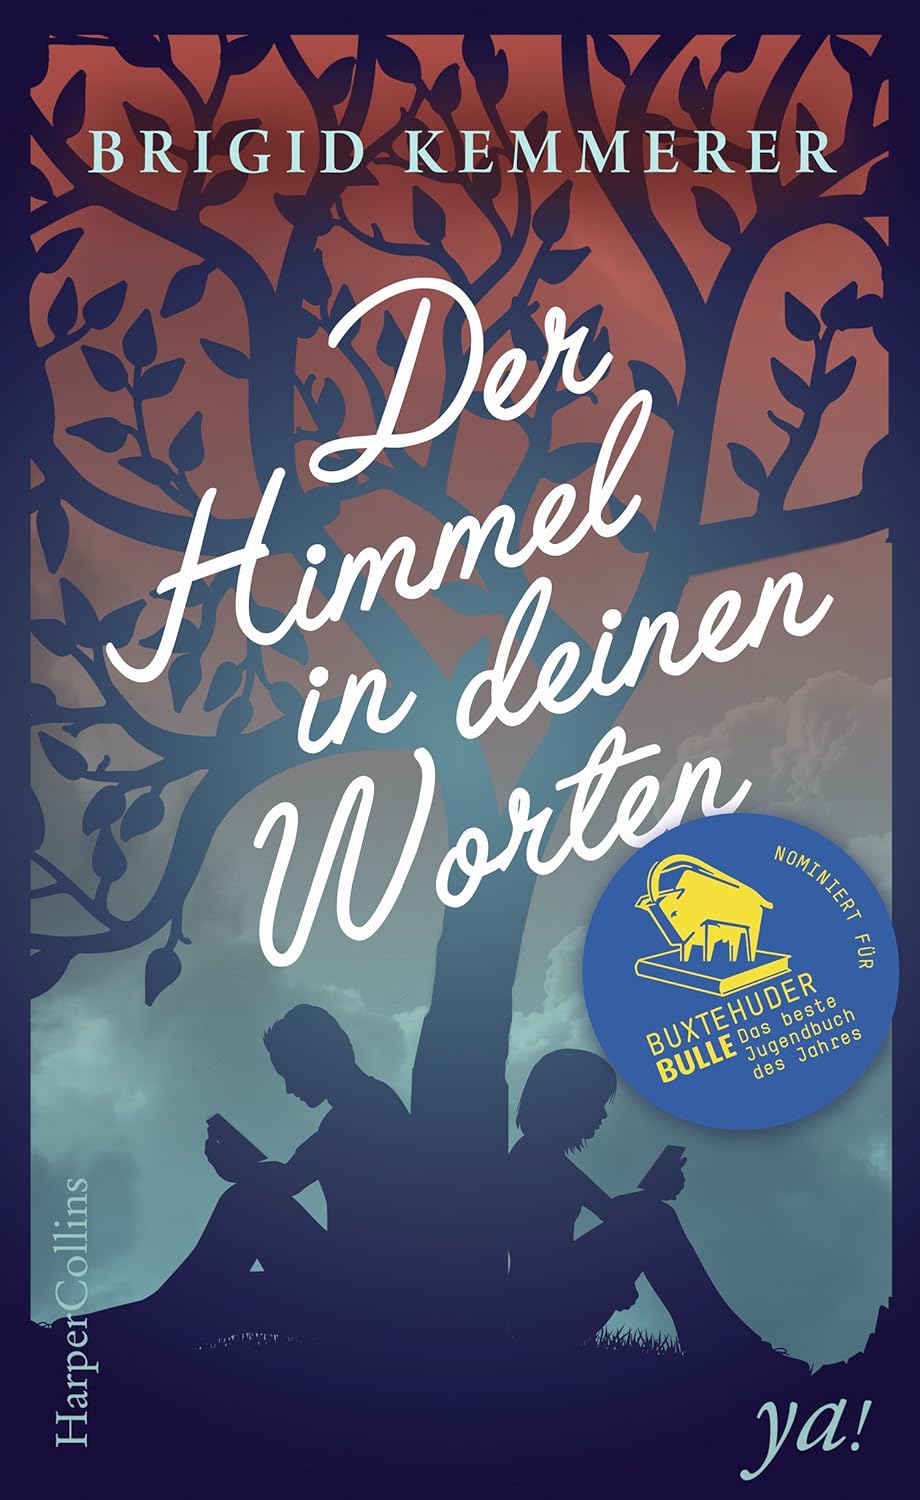 Der Himmel in deinen Worten Autorin: Brigid Kemmerer Übersetzerin: Henriette Zeltner-Shane Verlag: HarperCollins Erscheinungsdatum: 13.11.2017 ISBN: 978-3-959-67164-4 Nominiert für den Buxtehuder Bullen